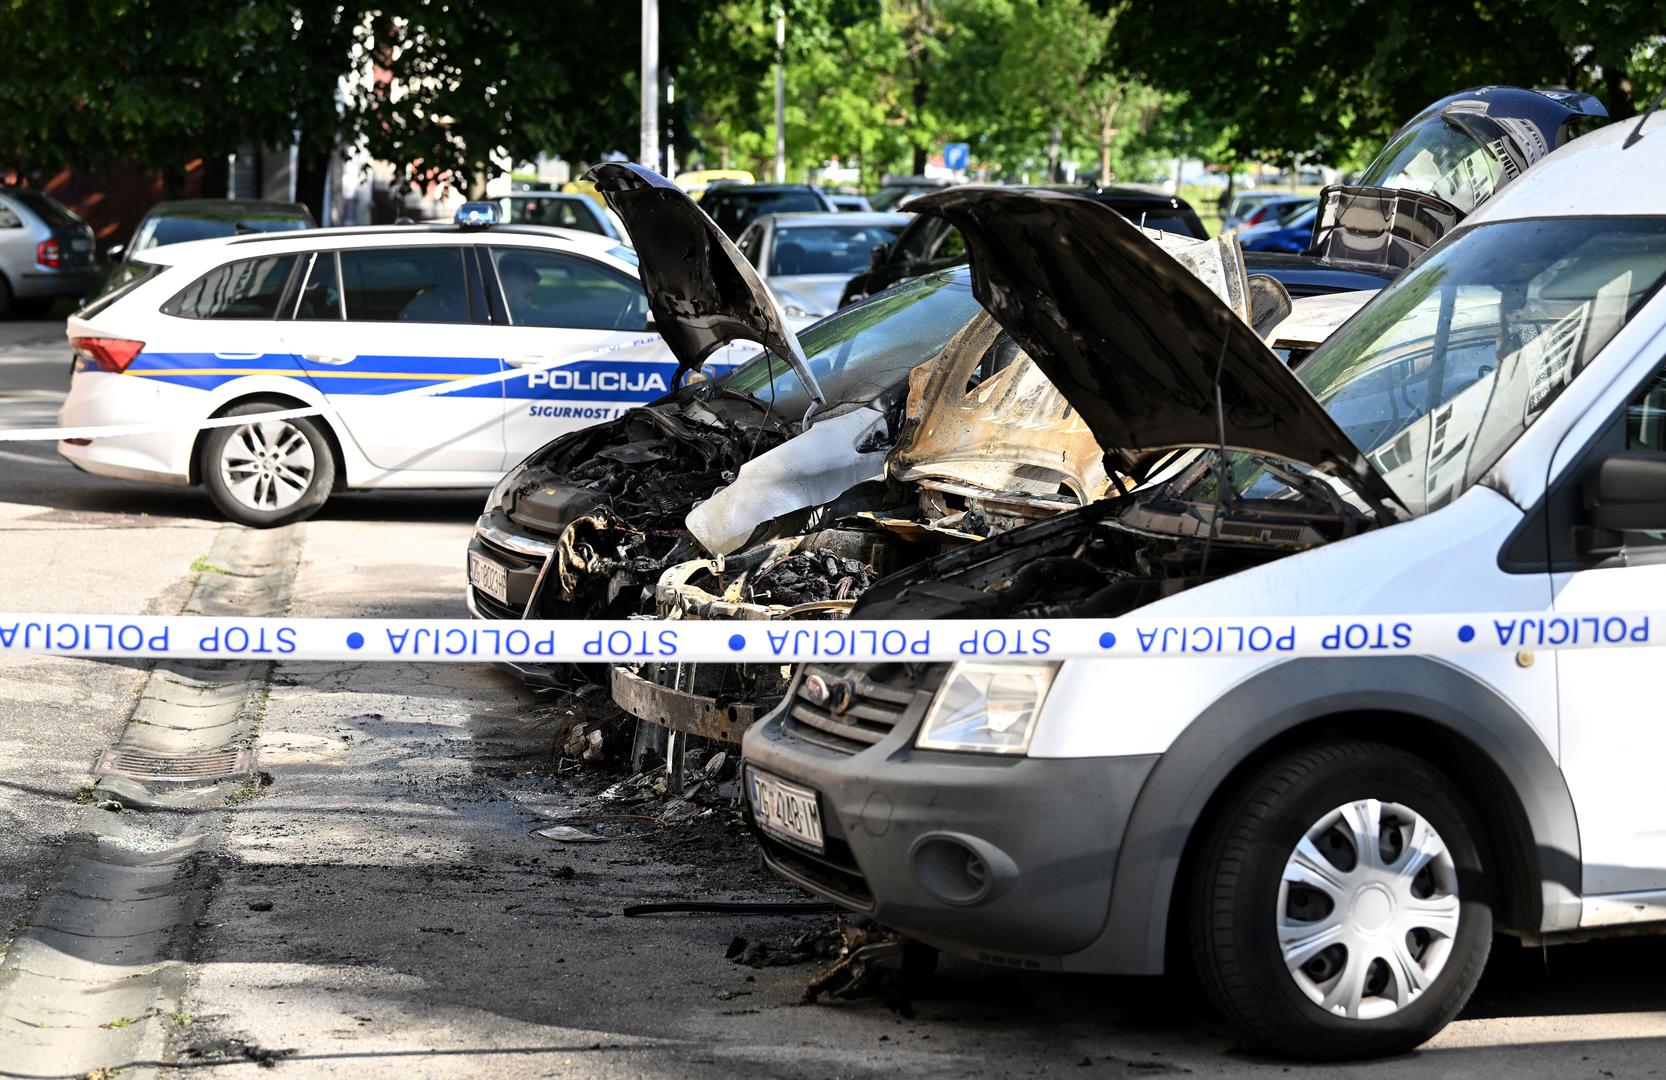 U petak u noći oko 2.30 u u Baranovićevoj ulici u zagrebačkom naselju Prečko došlo je do požara na parkingu koji je zahvatio tri parkirana automobila